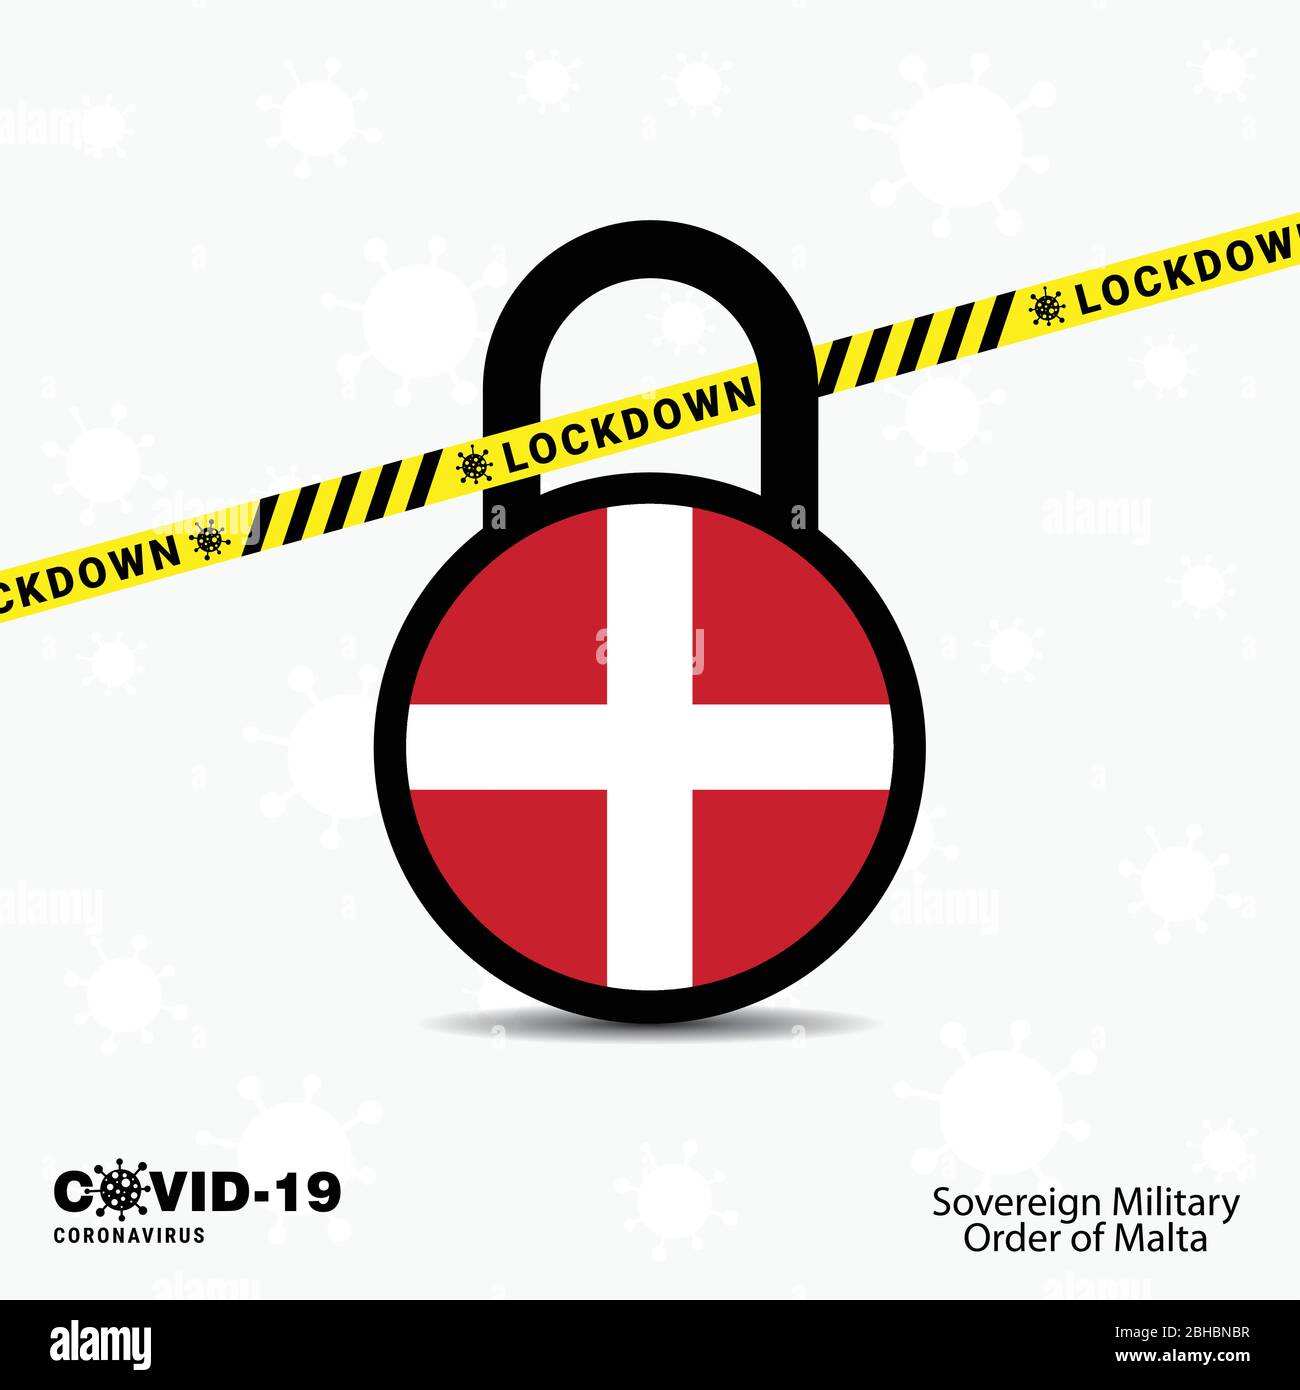 Orden Militar Soberana de Malta Bloquear Bloquear Bloquear plantilla de concienciación sobre la pandemia de Coronavirus. Diseño de bloqueo COVID-19 Ilustración del Vector